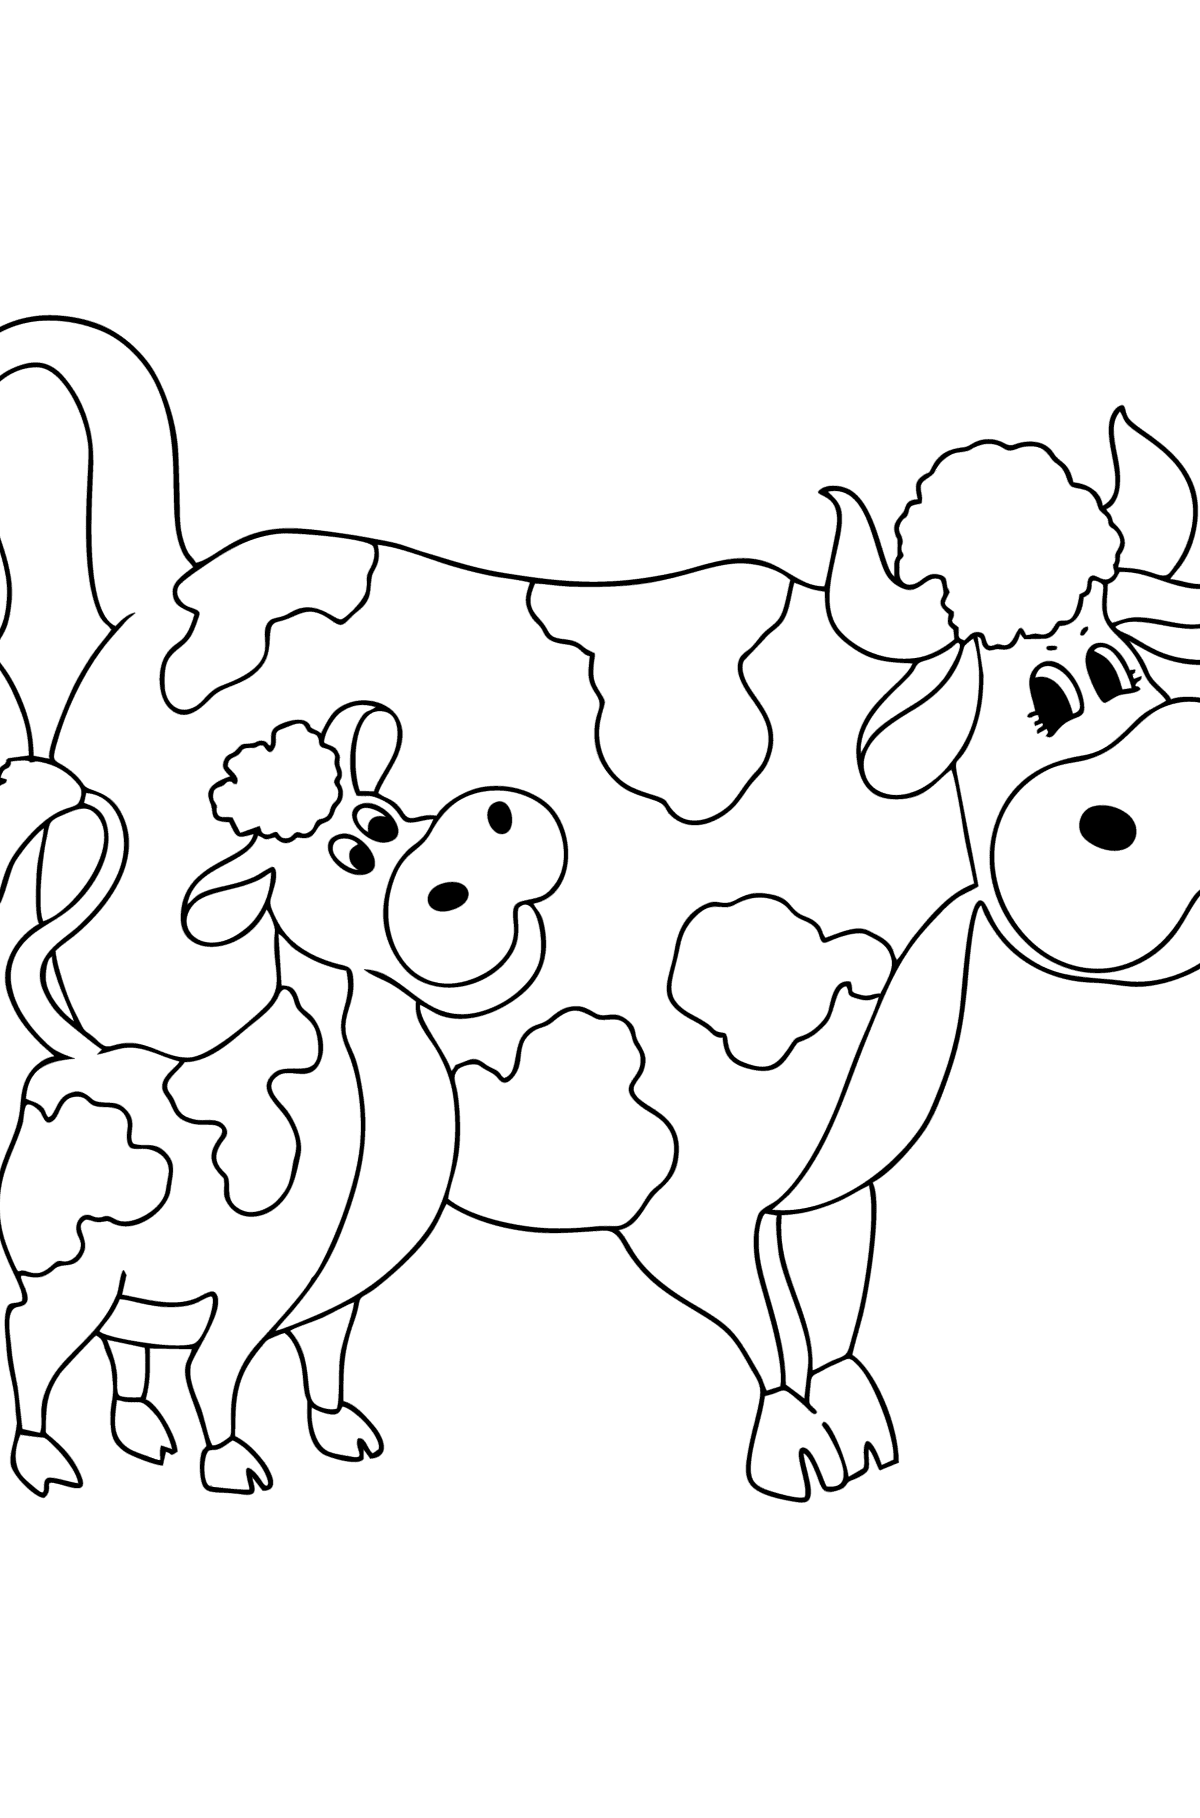 Värityskuva Lehmä ja vasikka - Värityskuvat lapsille